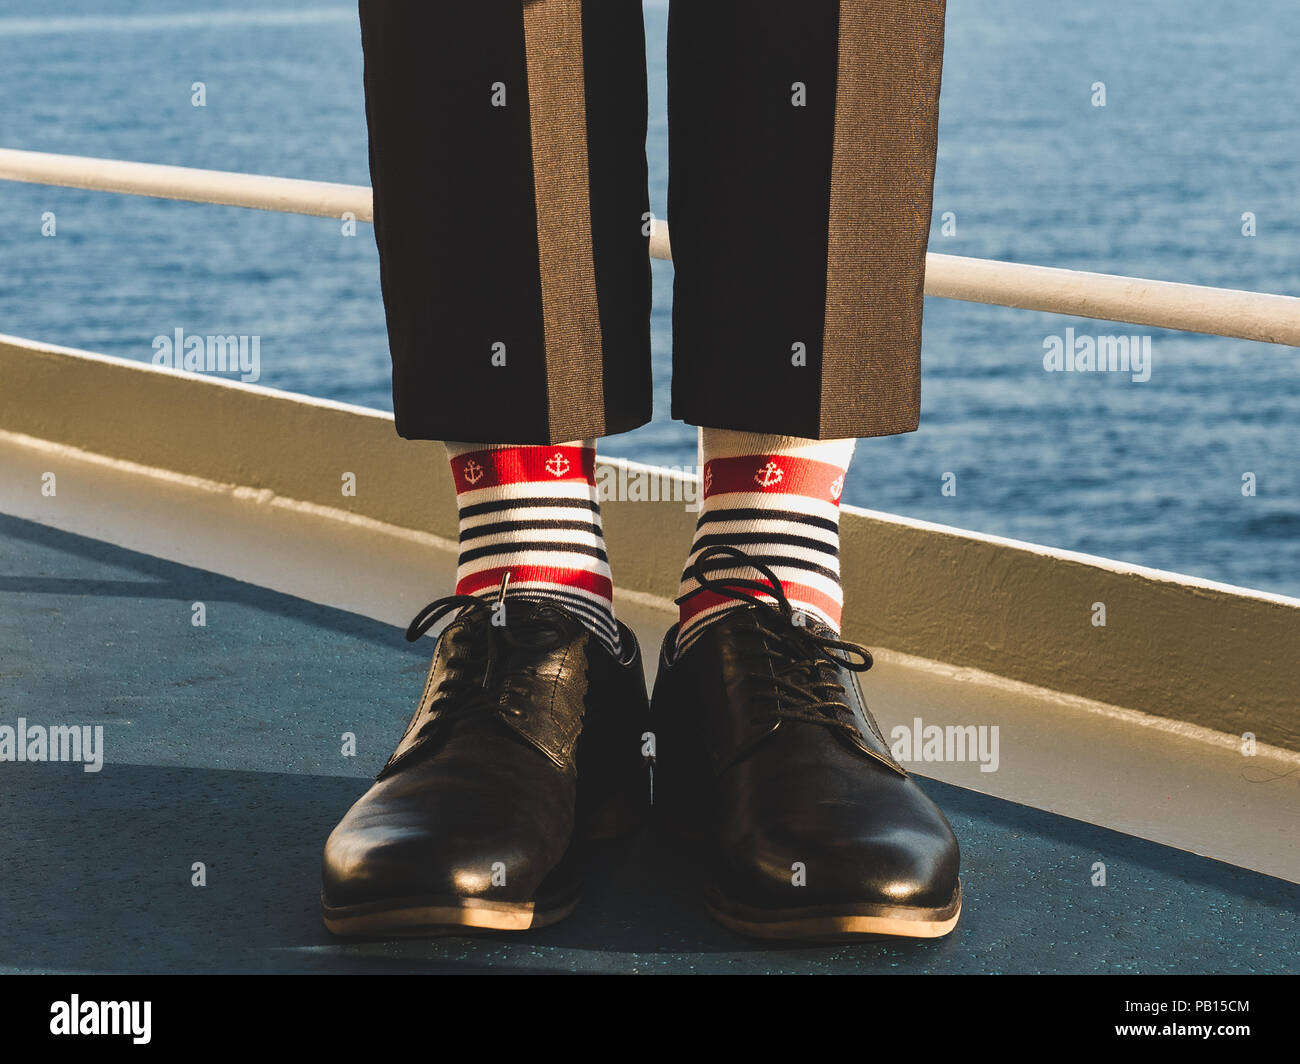 Dans l'homme élégant, chaussures noires, pantalon foncé et brillant, drôle,  chaussettes rayées avec un motif sur le pont d'un navire de croisière.  Lifestyle, Fashion, fun Photo Stock - Alamy